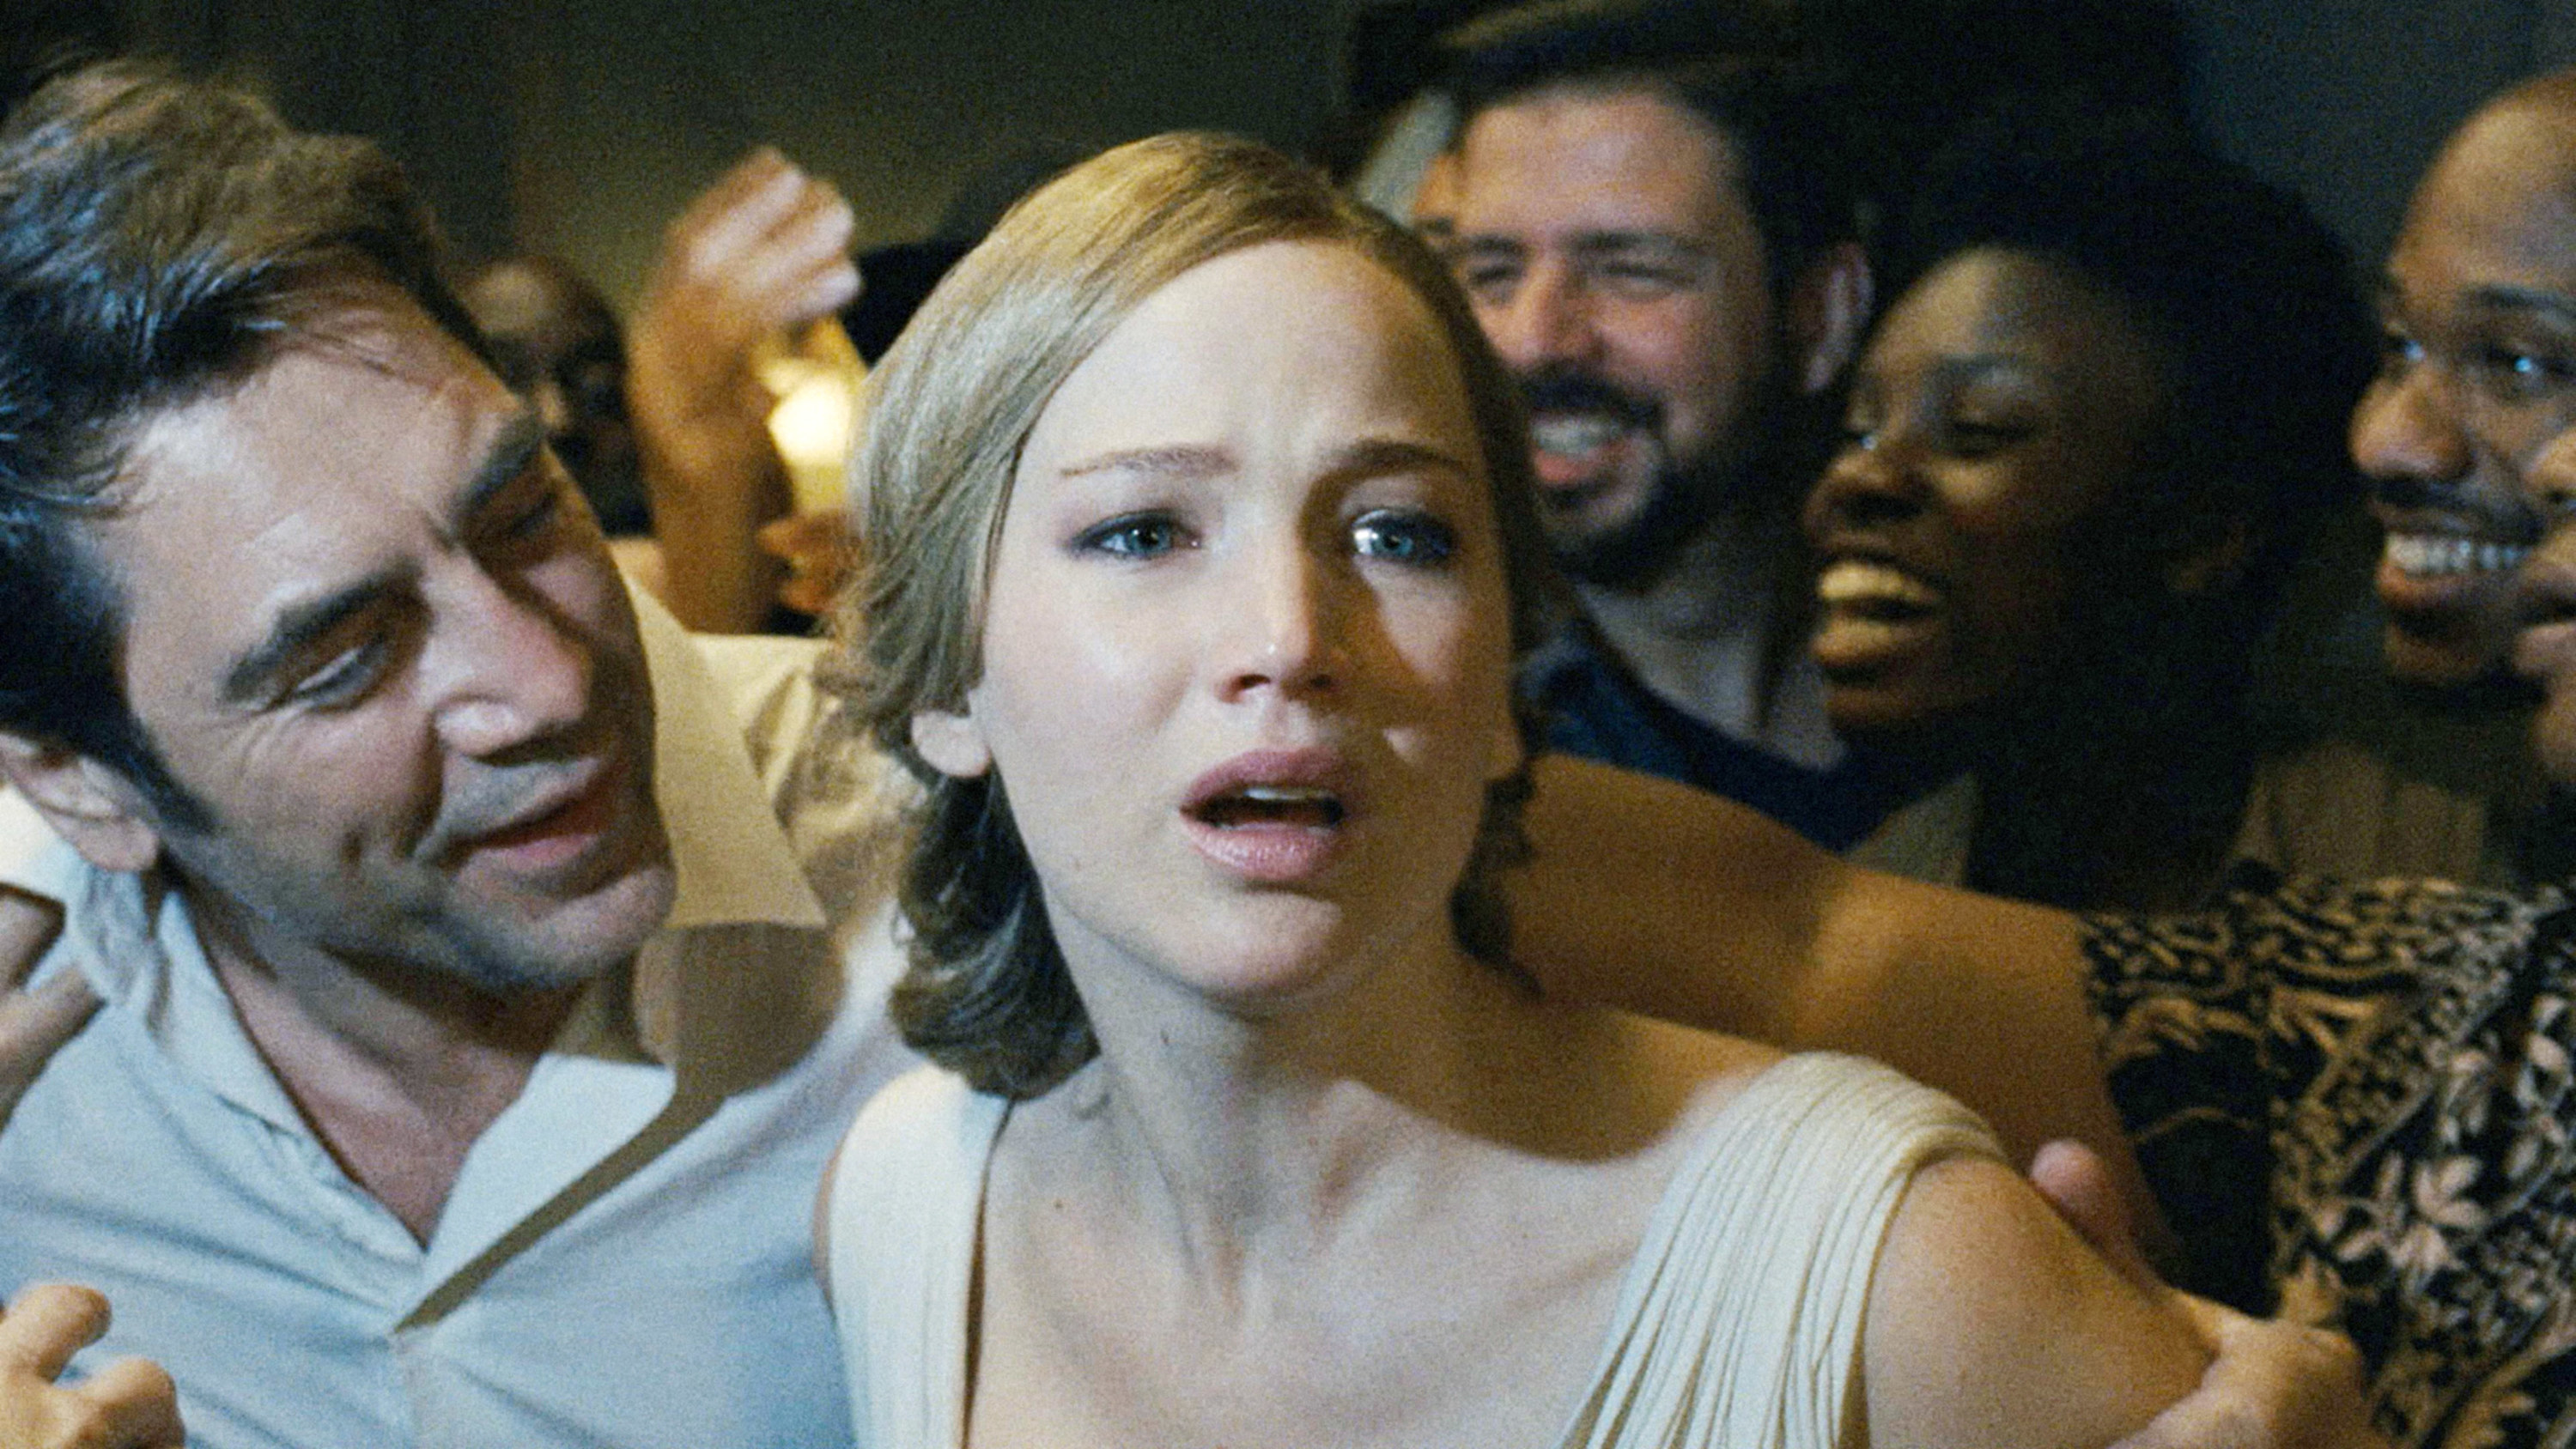 Javier Bardem, Jennifer Lawrence in a crowd of people